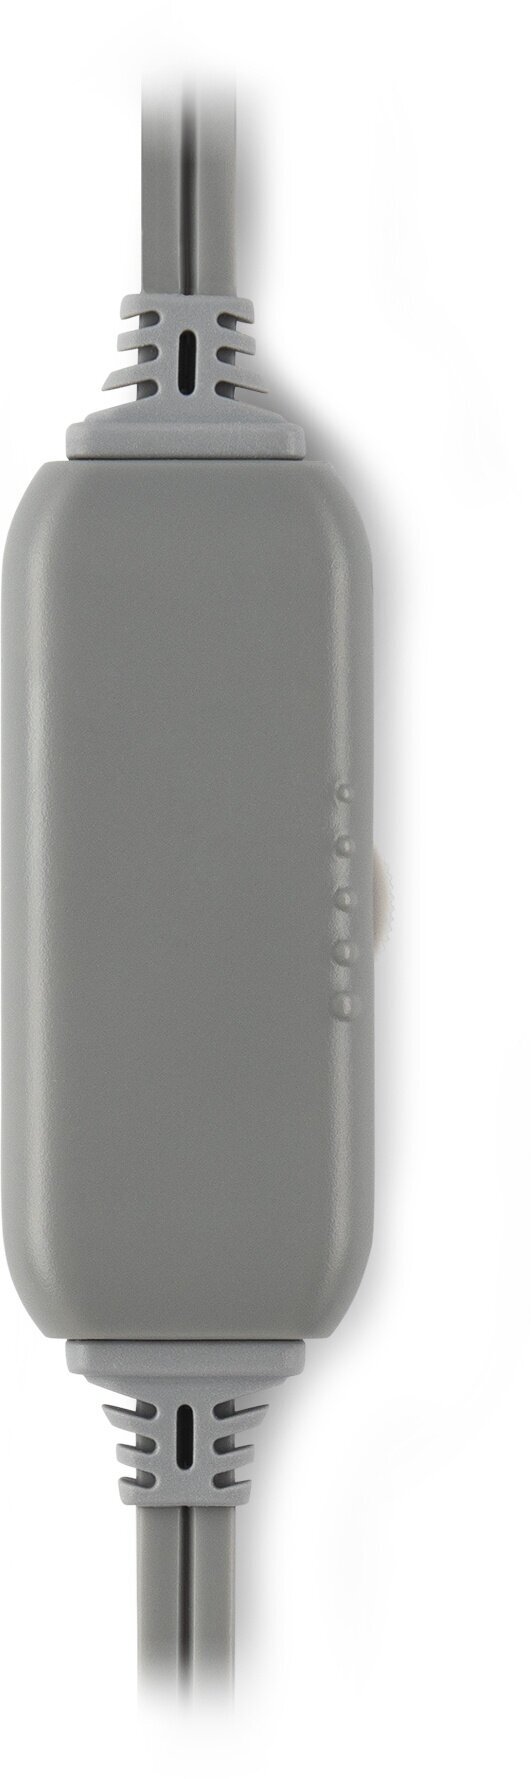 Наушники с микрофоном Оклик HS-L600 серый 1.8м мониторные (1532023), 20Гц-20КГц, проводные, 2x3.5 мм, 50мВт, микрофон однонаправленный, крепление оголовье